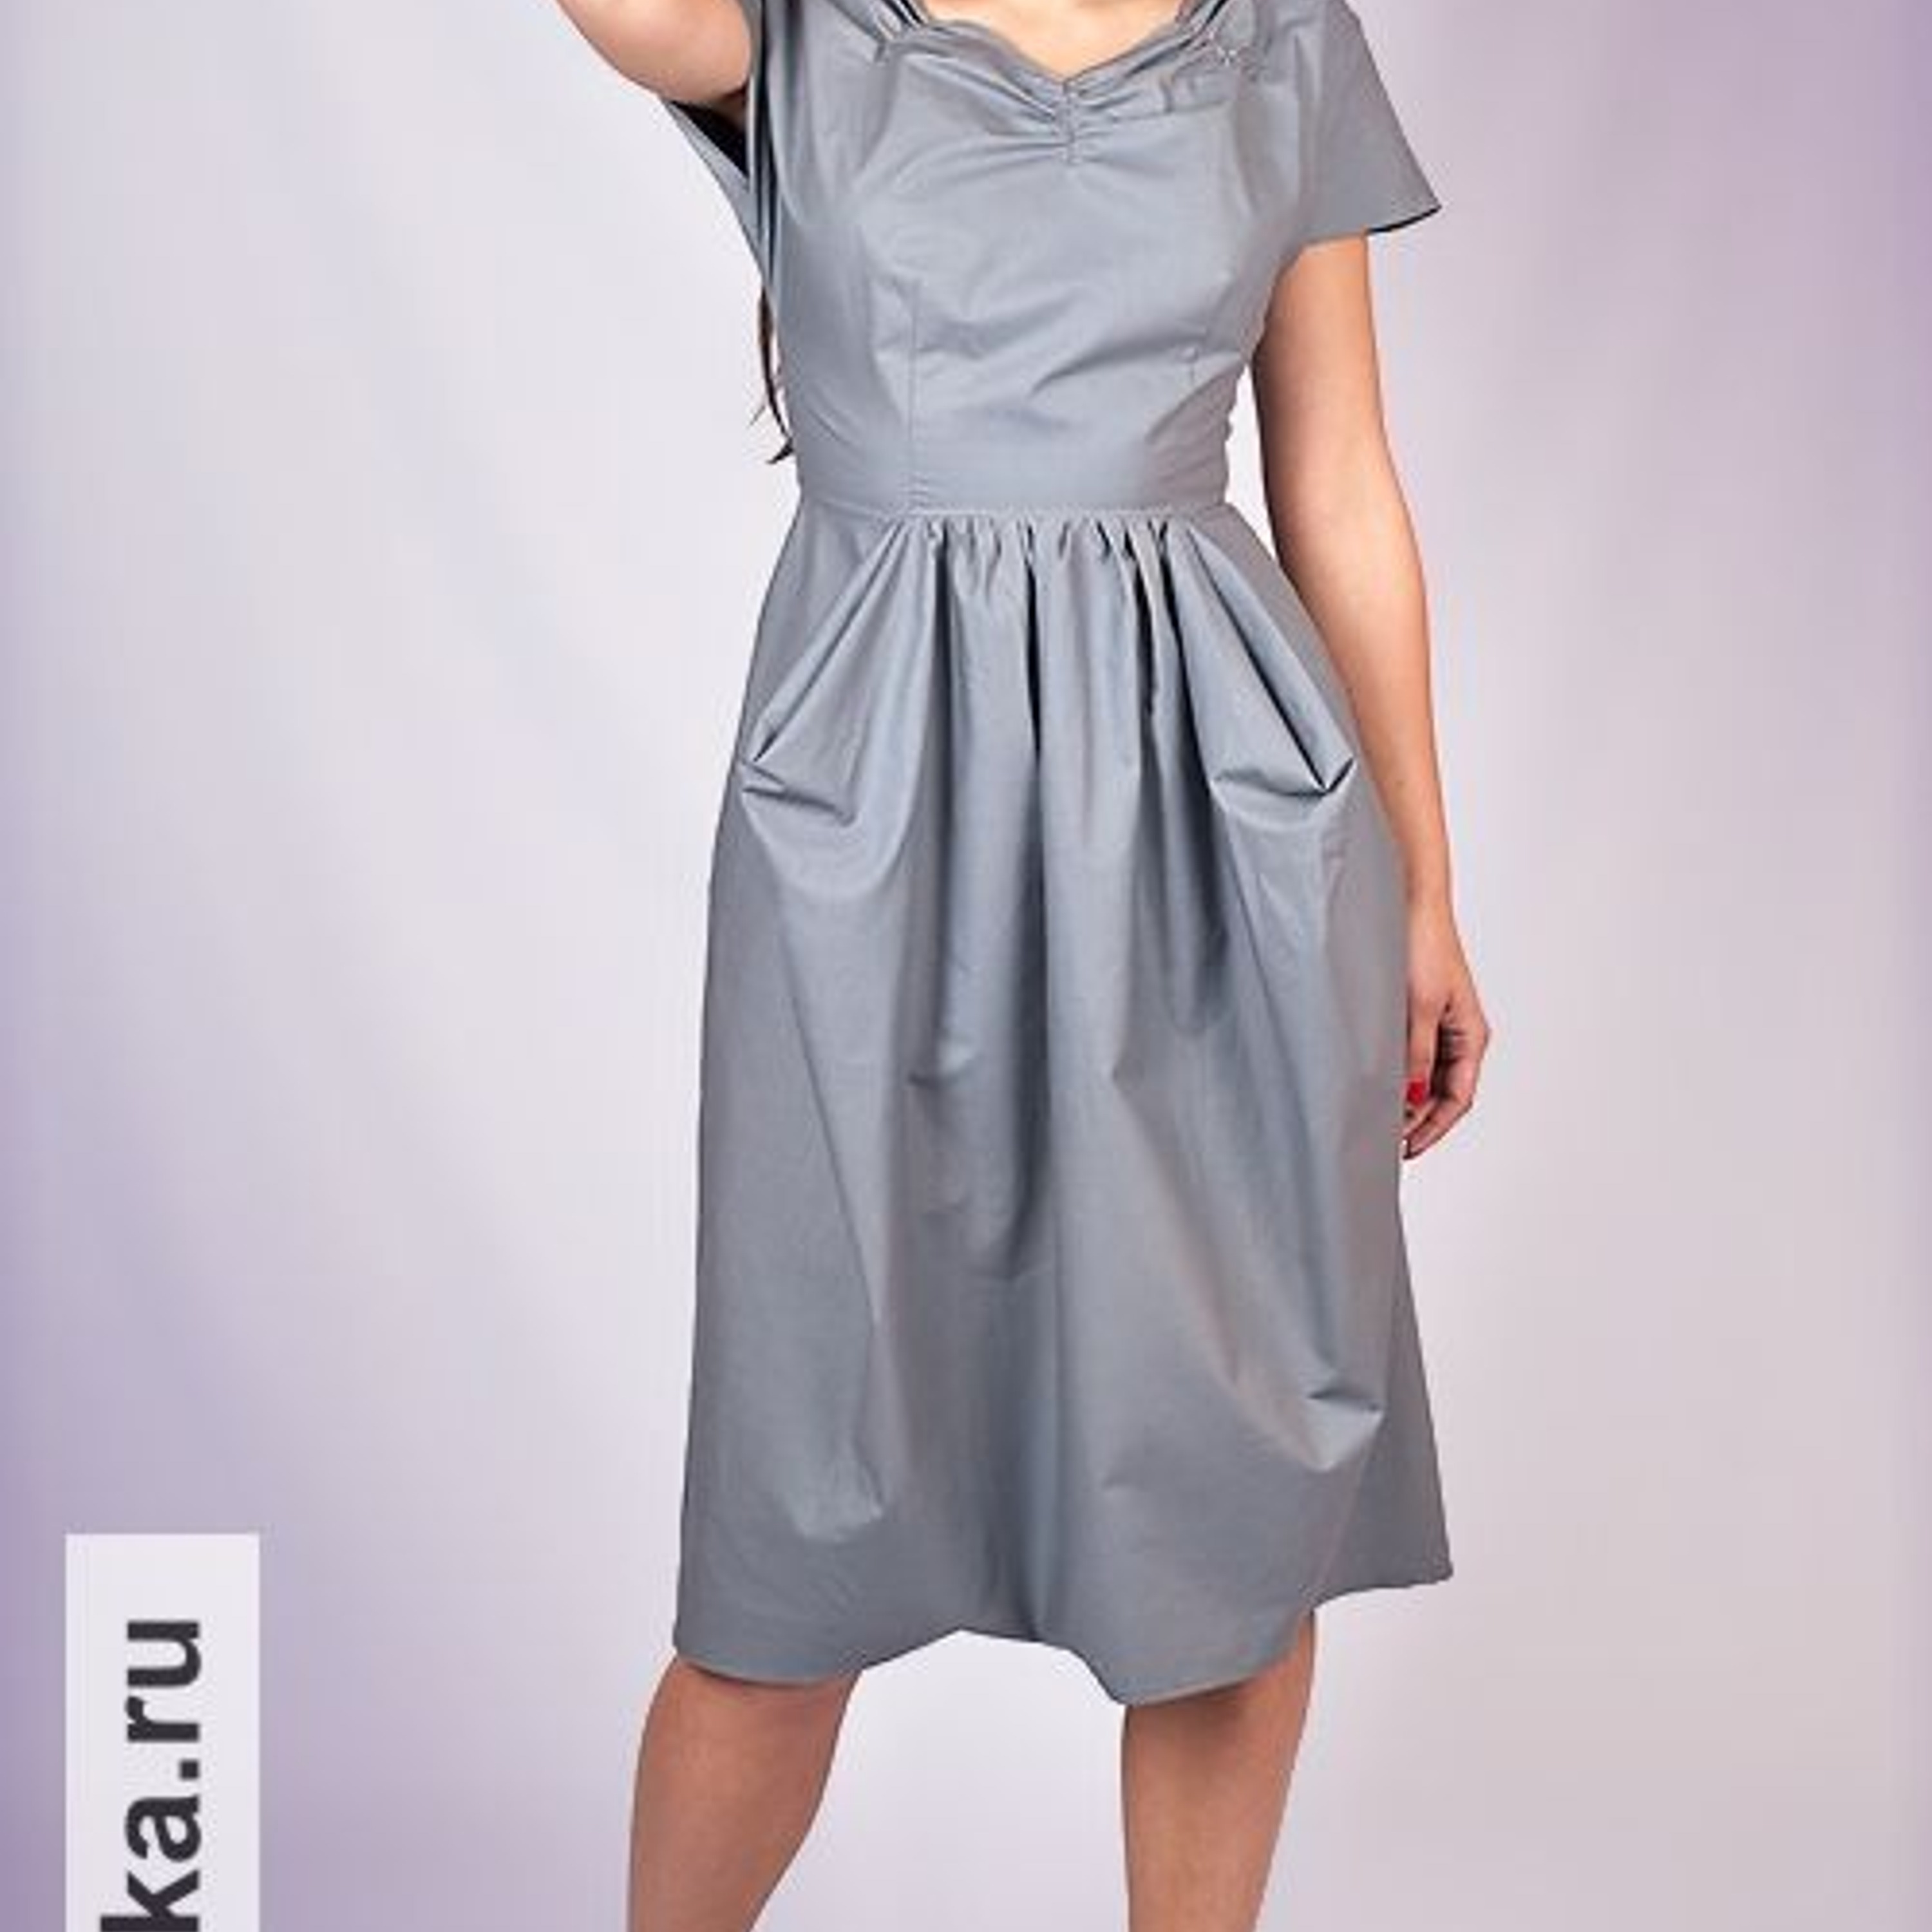 Платье с запахом - выкройка № 134 из журнала 4/2011 Burda – выкройки платьев на BurdaStyle.ru